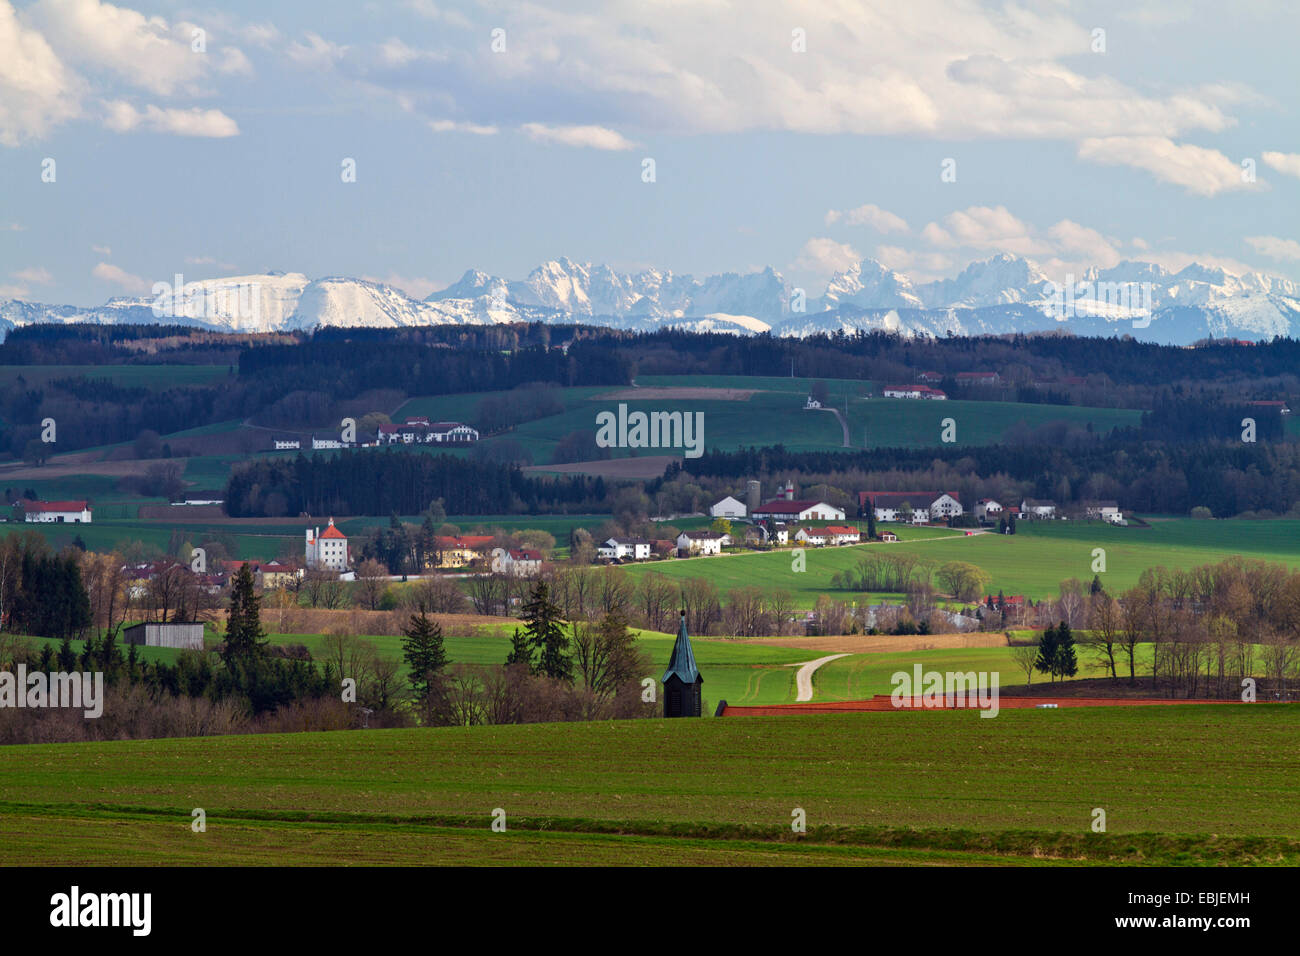 Vistas a la Morrena terminal paisaje y Alpes de Baviera, Alemania, Dorfen Isental Foto de stock